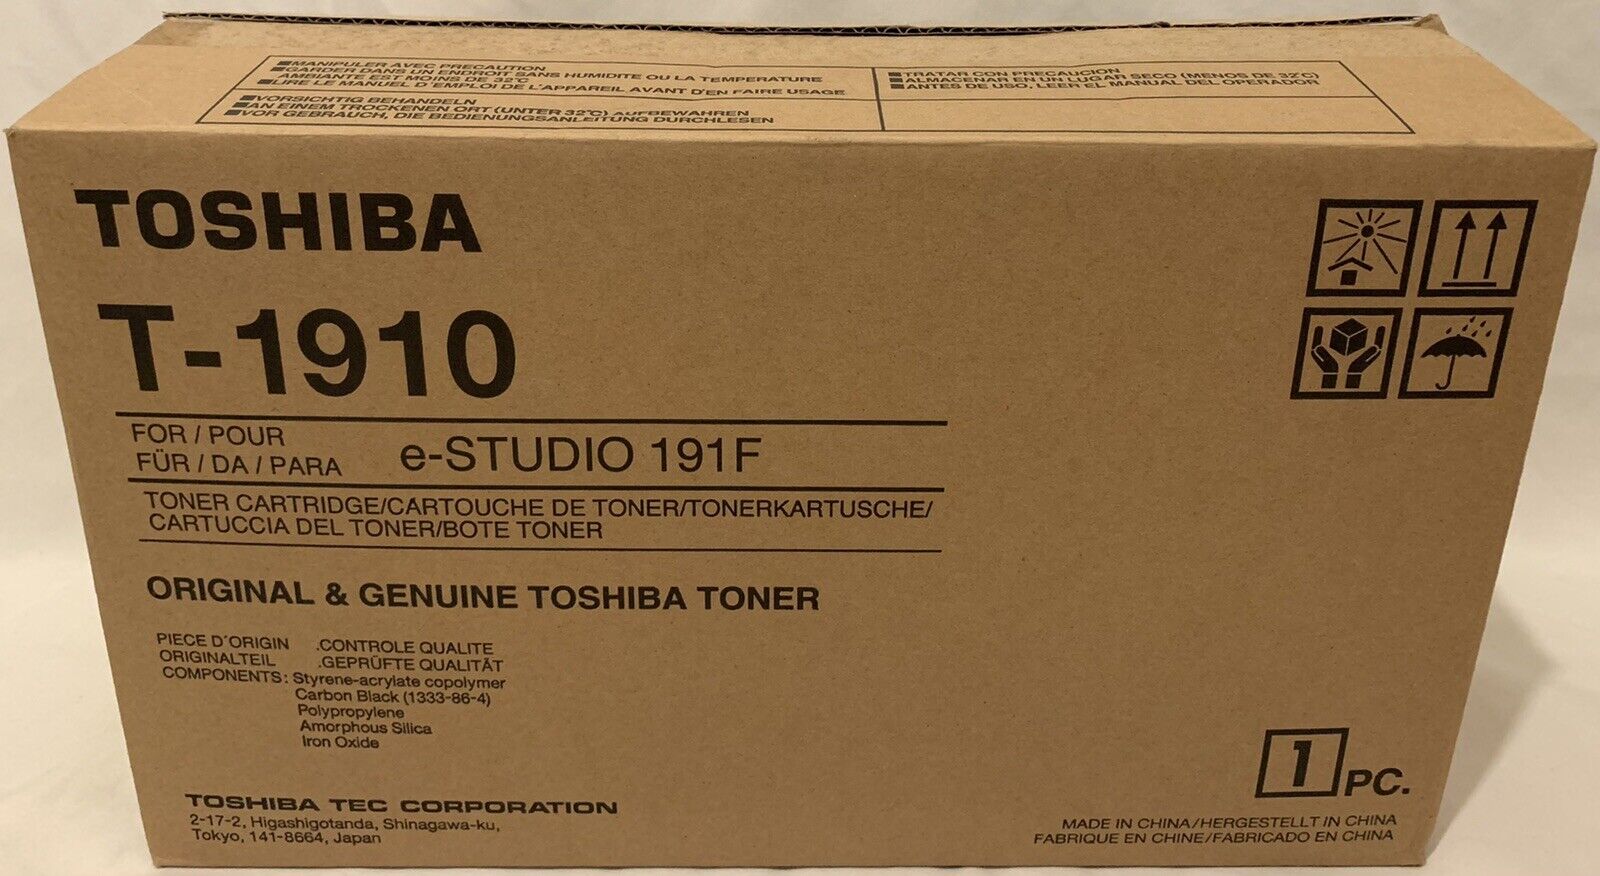 T1910 TOSHIBA E-STUDIO 191F TONER CARTRIDGE BLACK